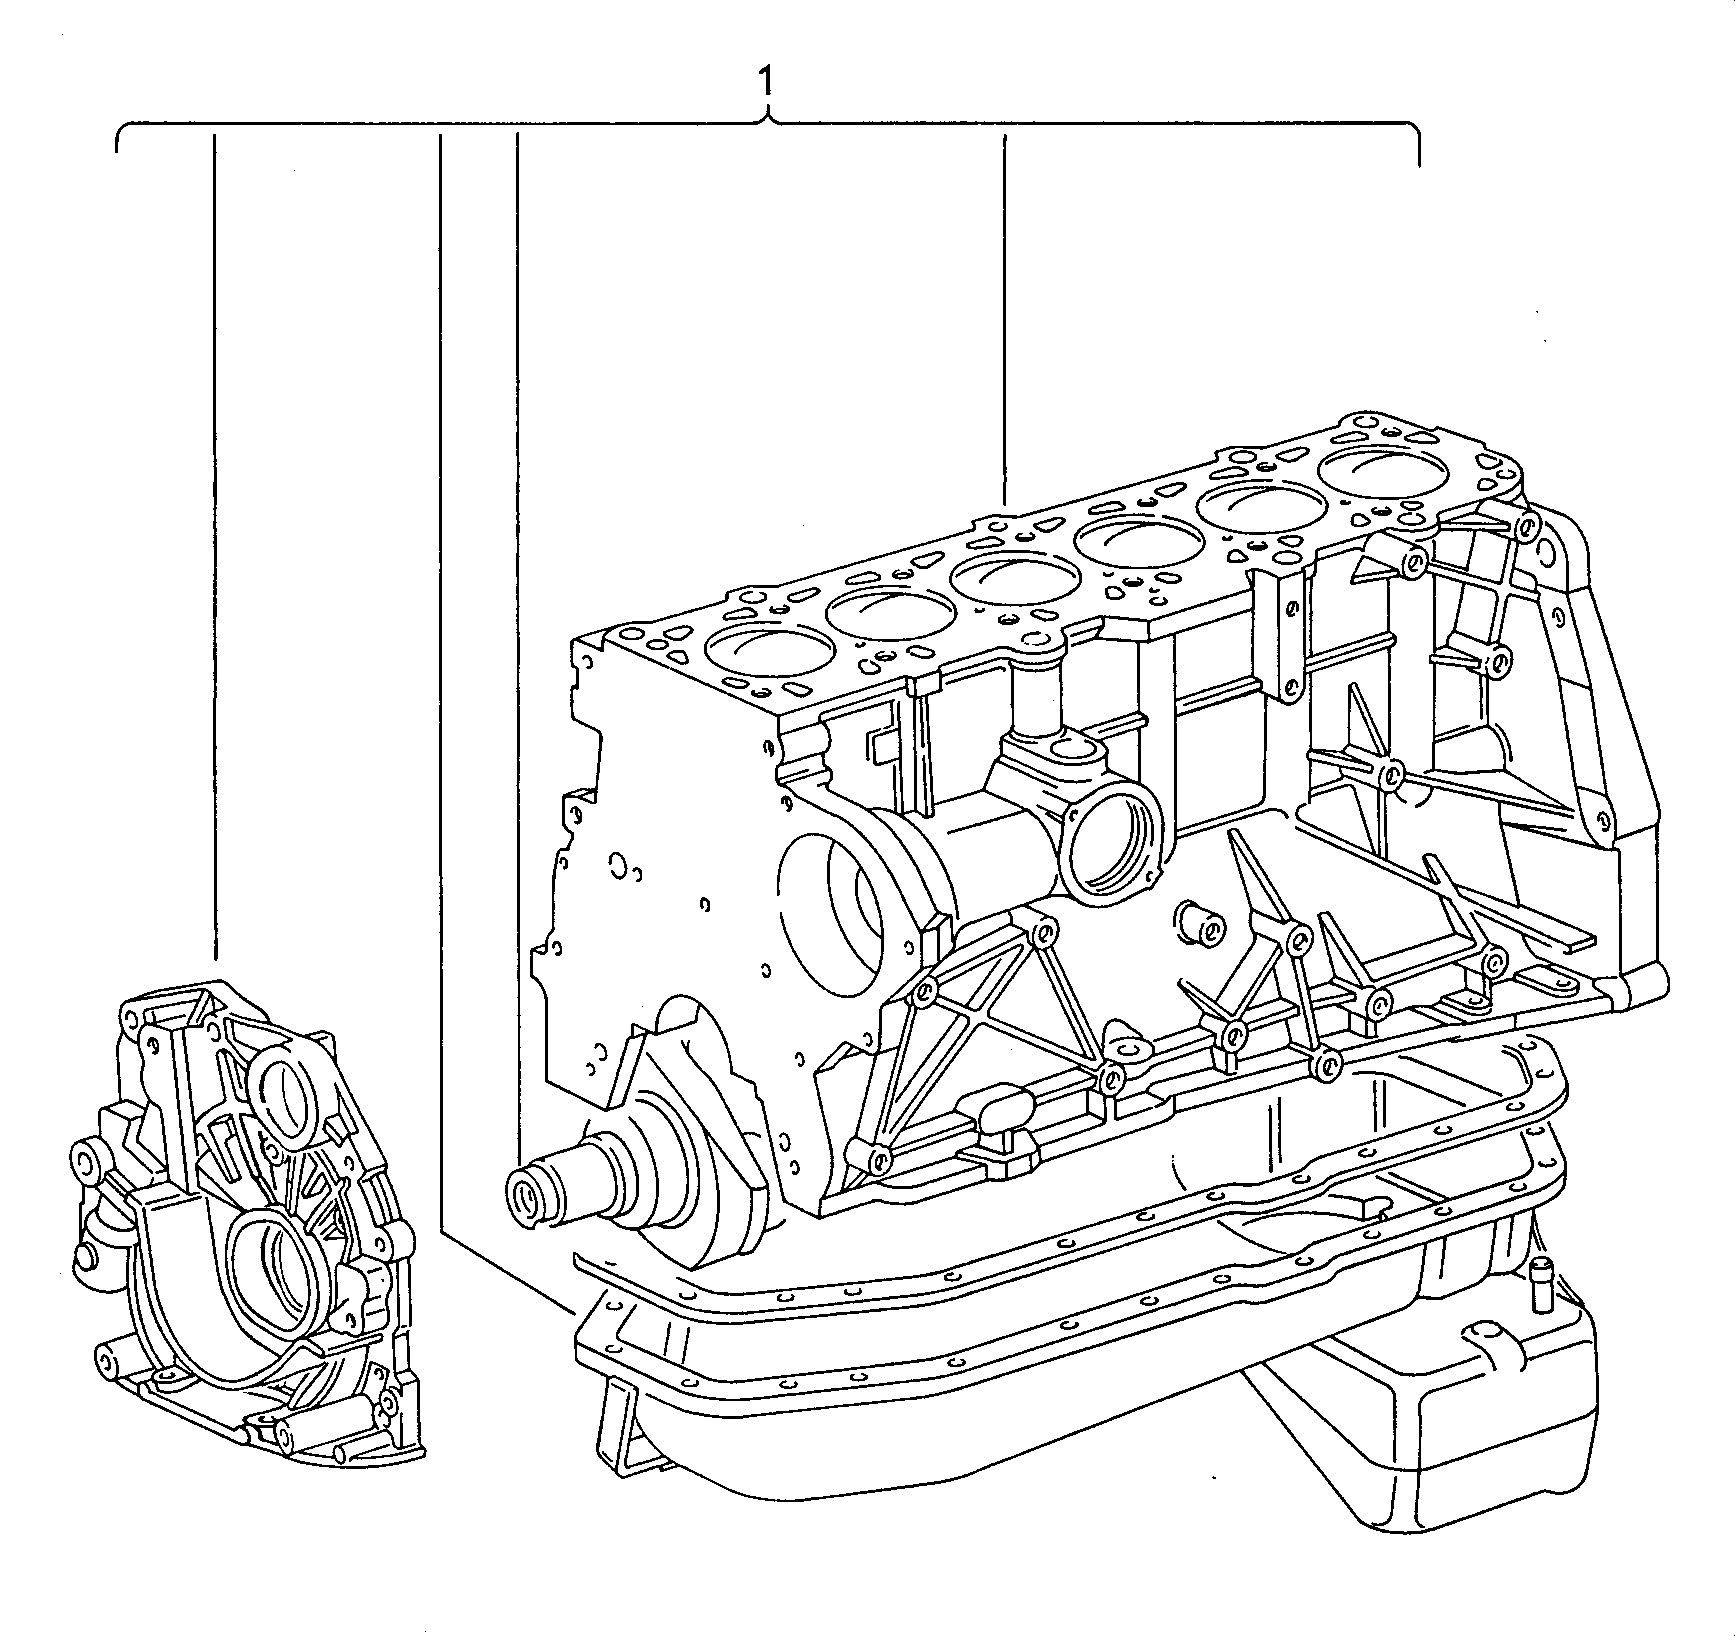 Teilmotor mit Kurbelwelle,<br>Kolben, Ölpumpe und Ölwanne 2,4Ltr. - Diesel-Industrie-Motore - imd